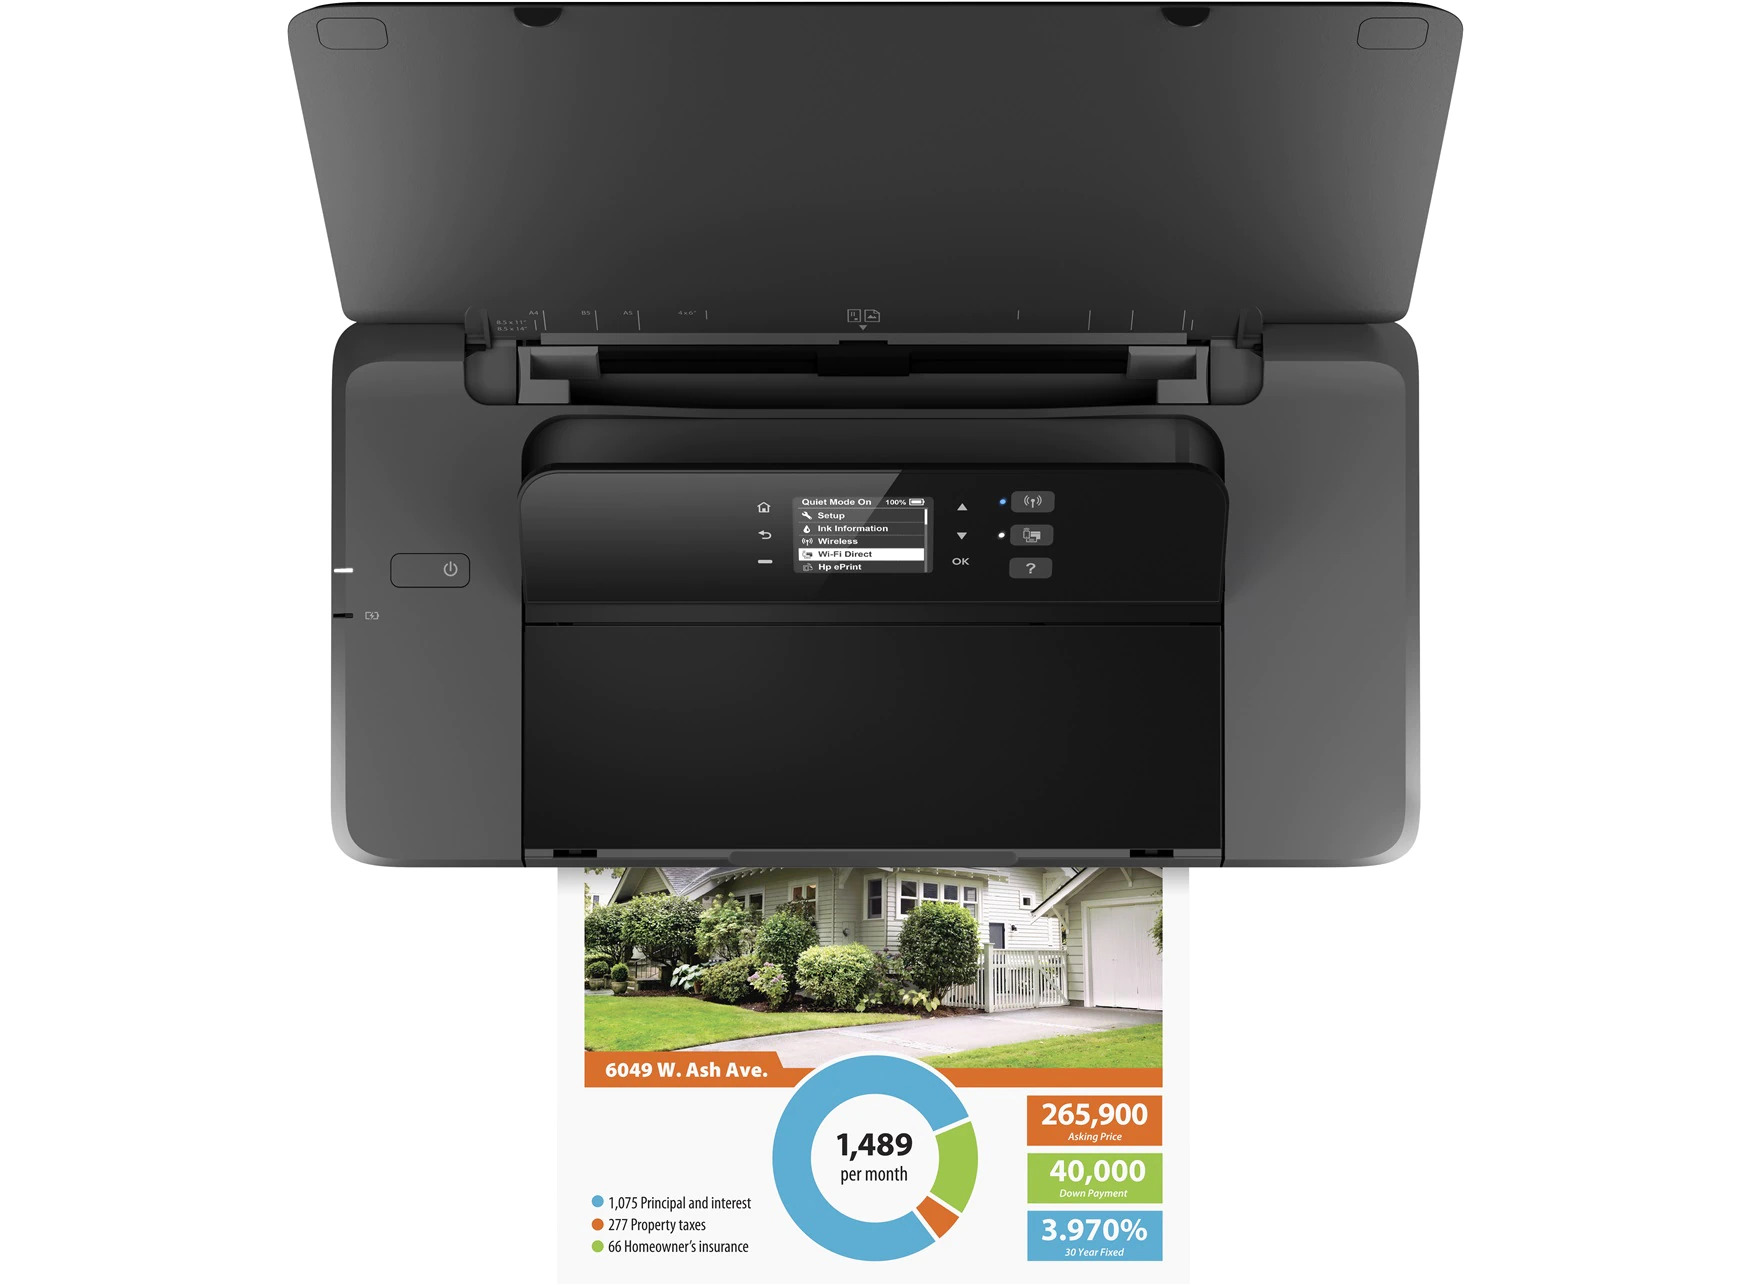 HP - Impressora Mobile Jato de Tinta HP OfficeJet 200 WiFi